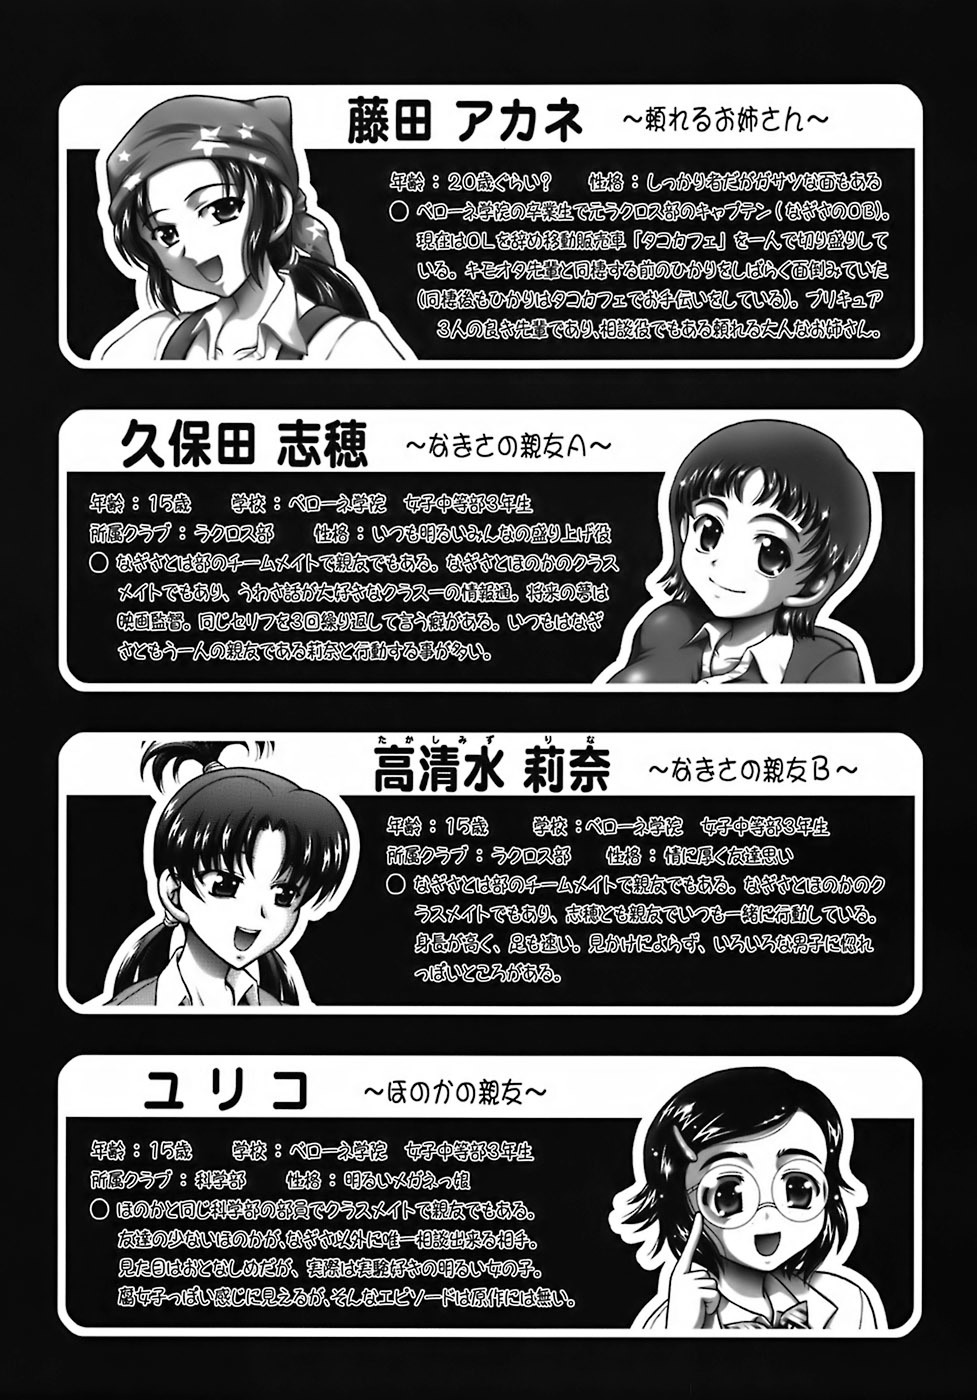 Milk Hunters 6 futari wa pretty cure 5 hentai manga